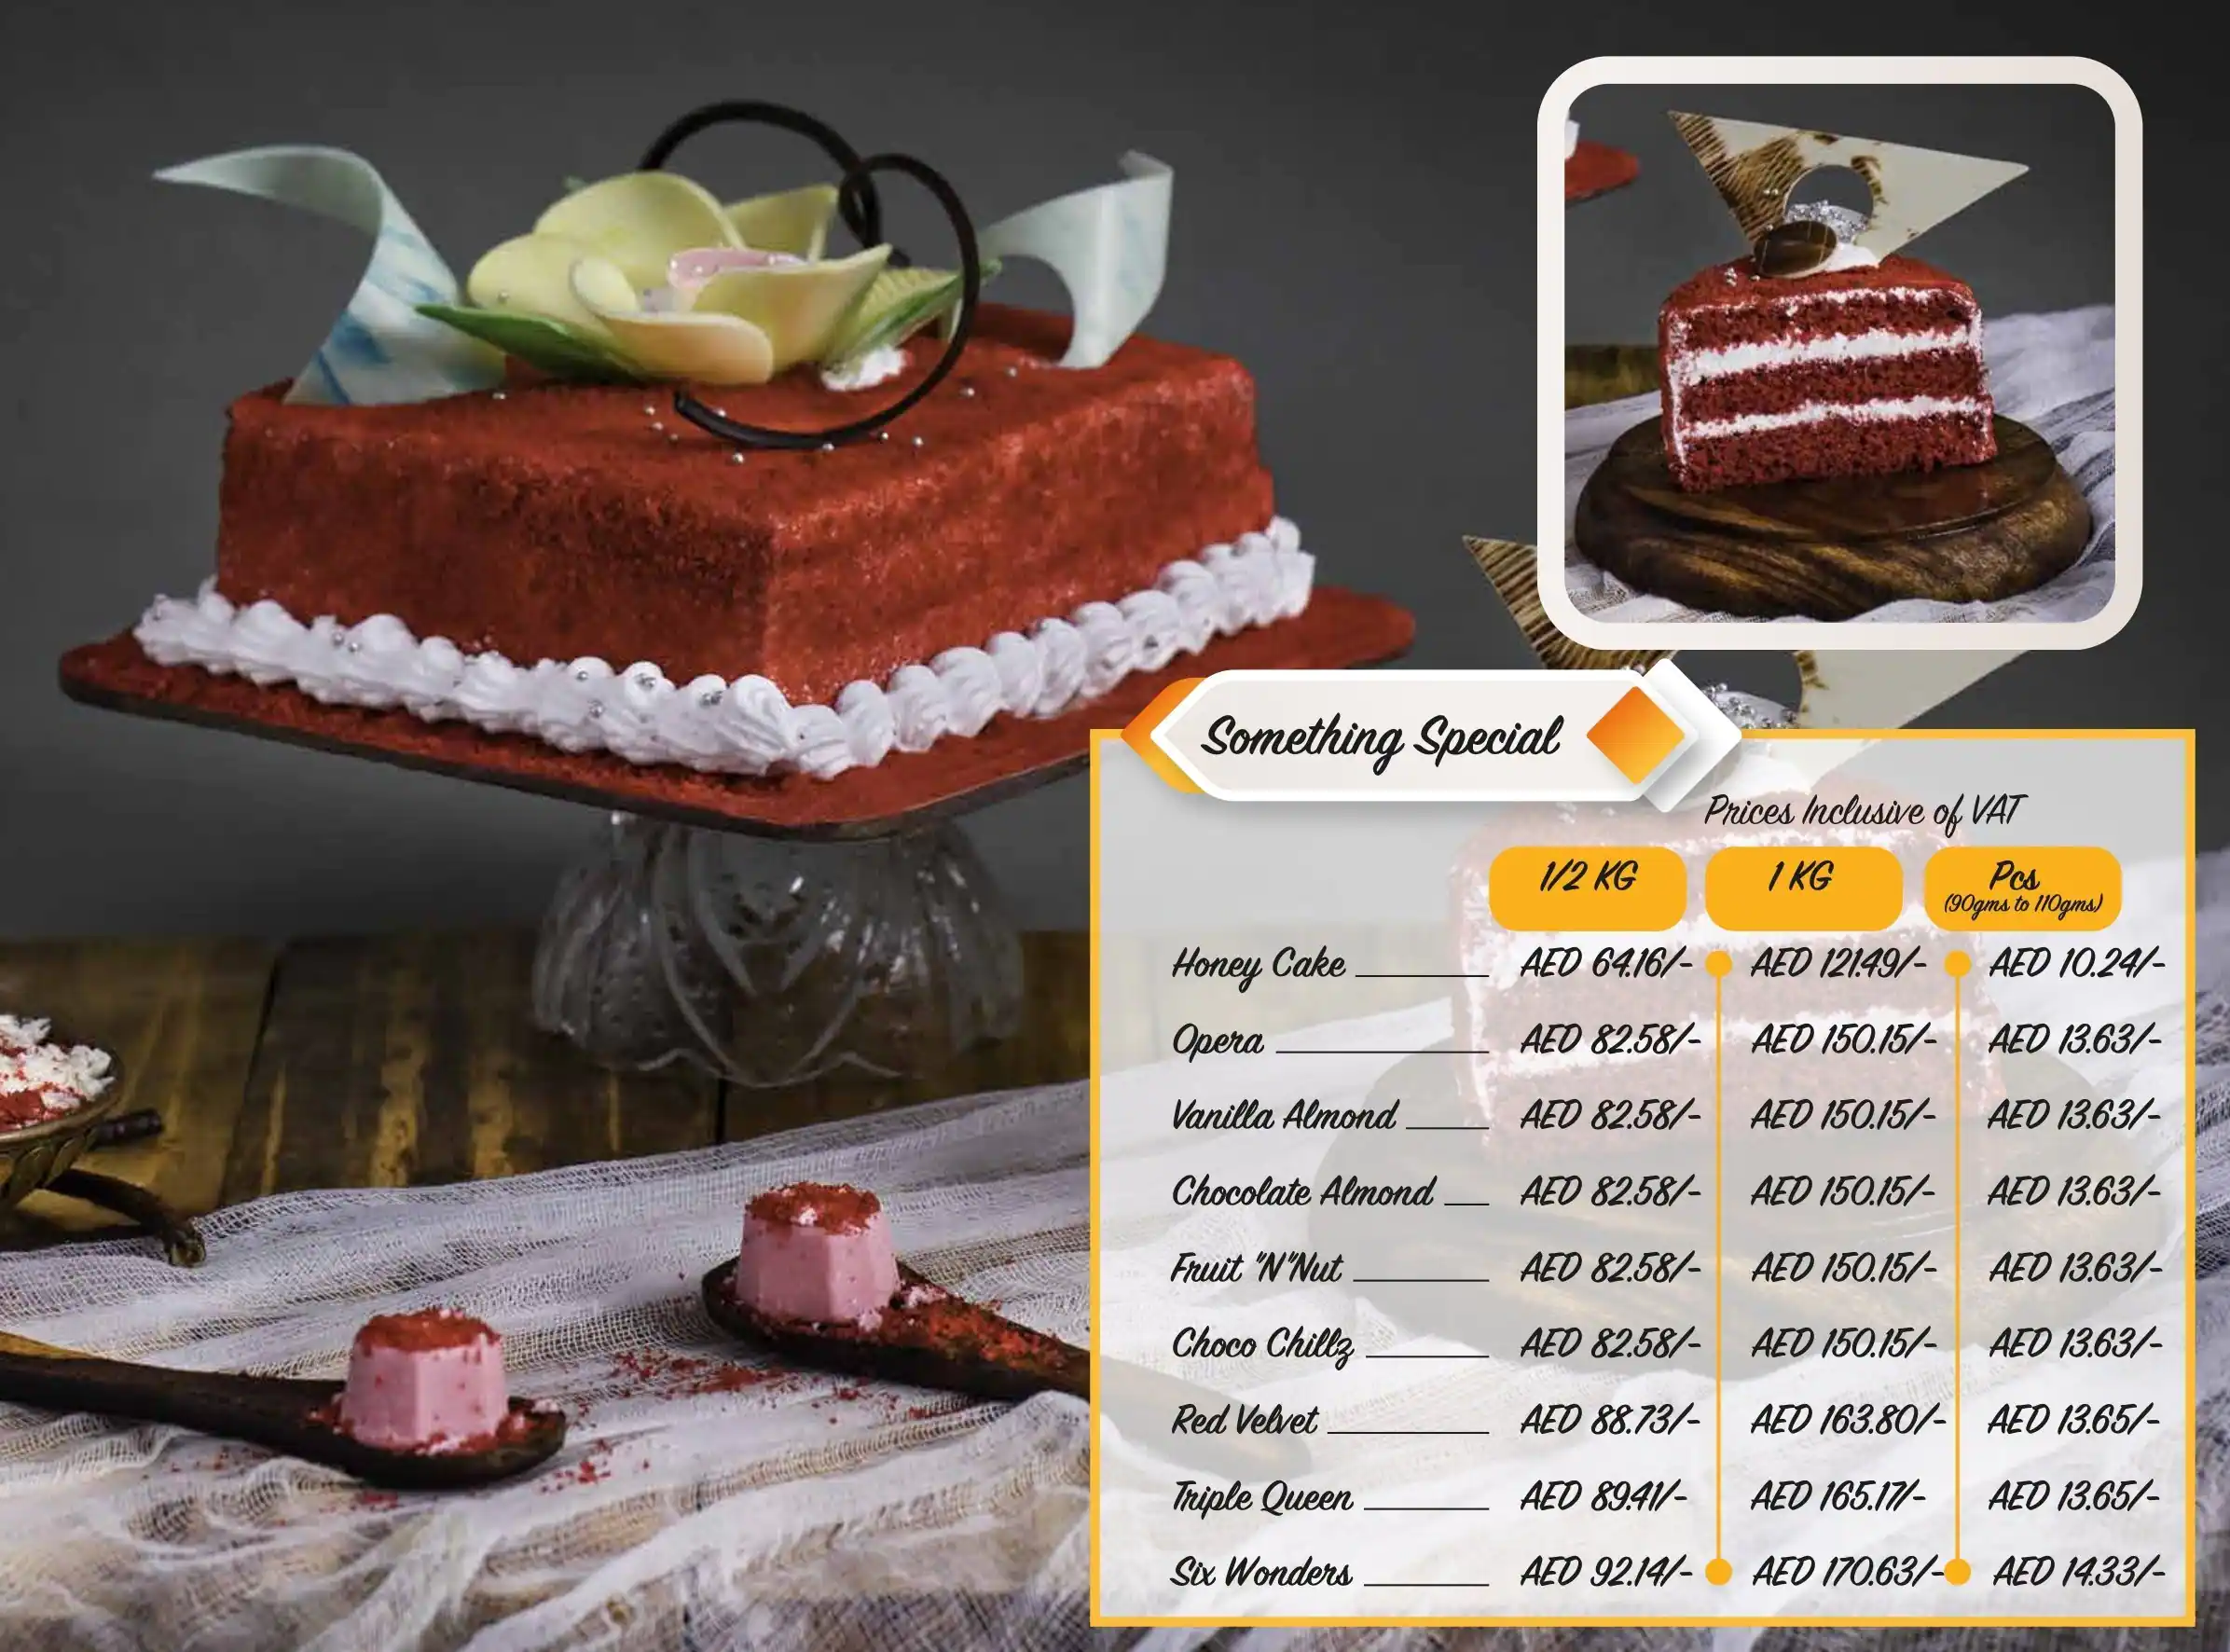 Share 58+ amma's pastries cake designs - in.daotaonec